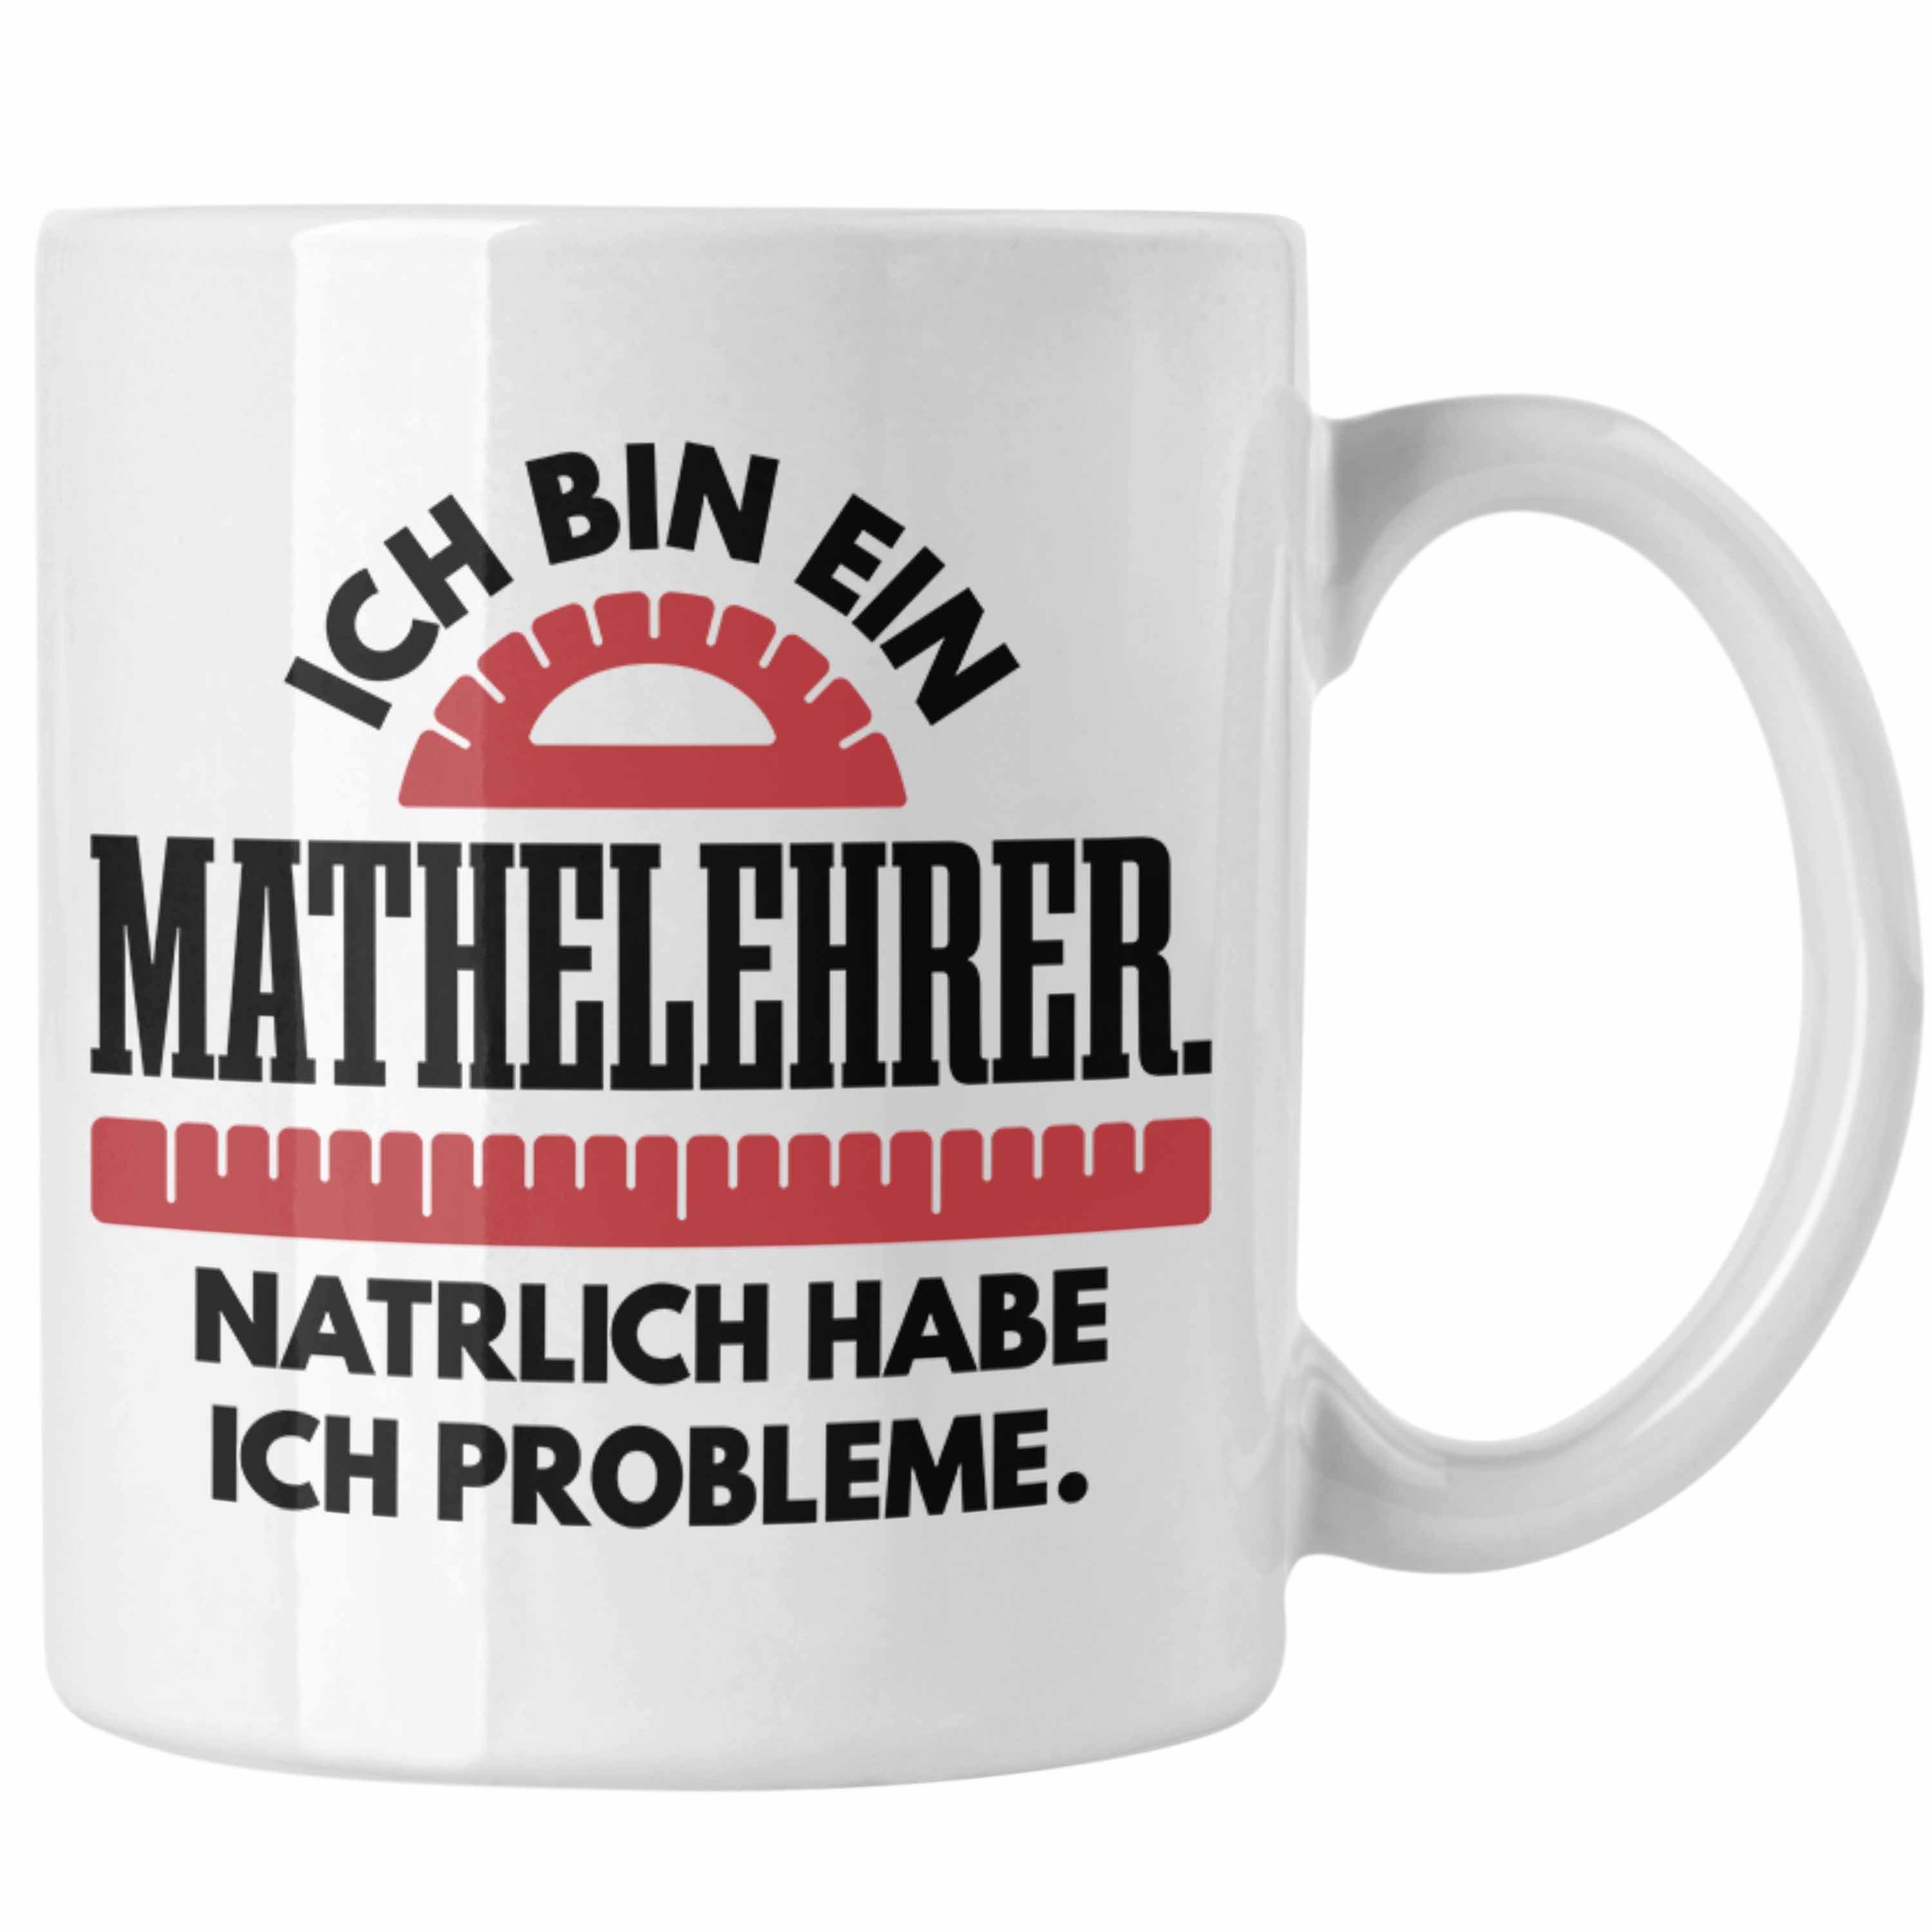 Trendation Tasse Trendation - Mathelehrer Tasse Mathematiker Tassen mit Spruch Lustig Kaffeetasse Geschenk Mathe Lehrer Sprüche Weiss